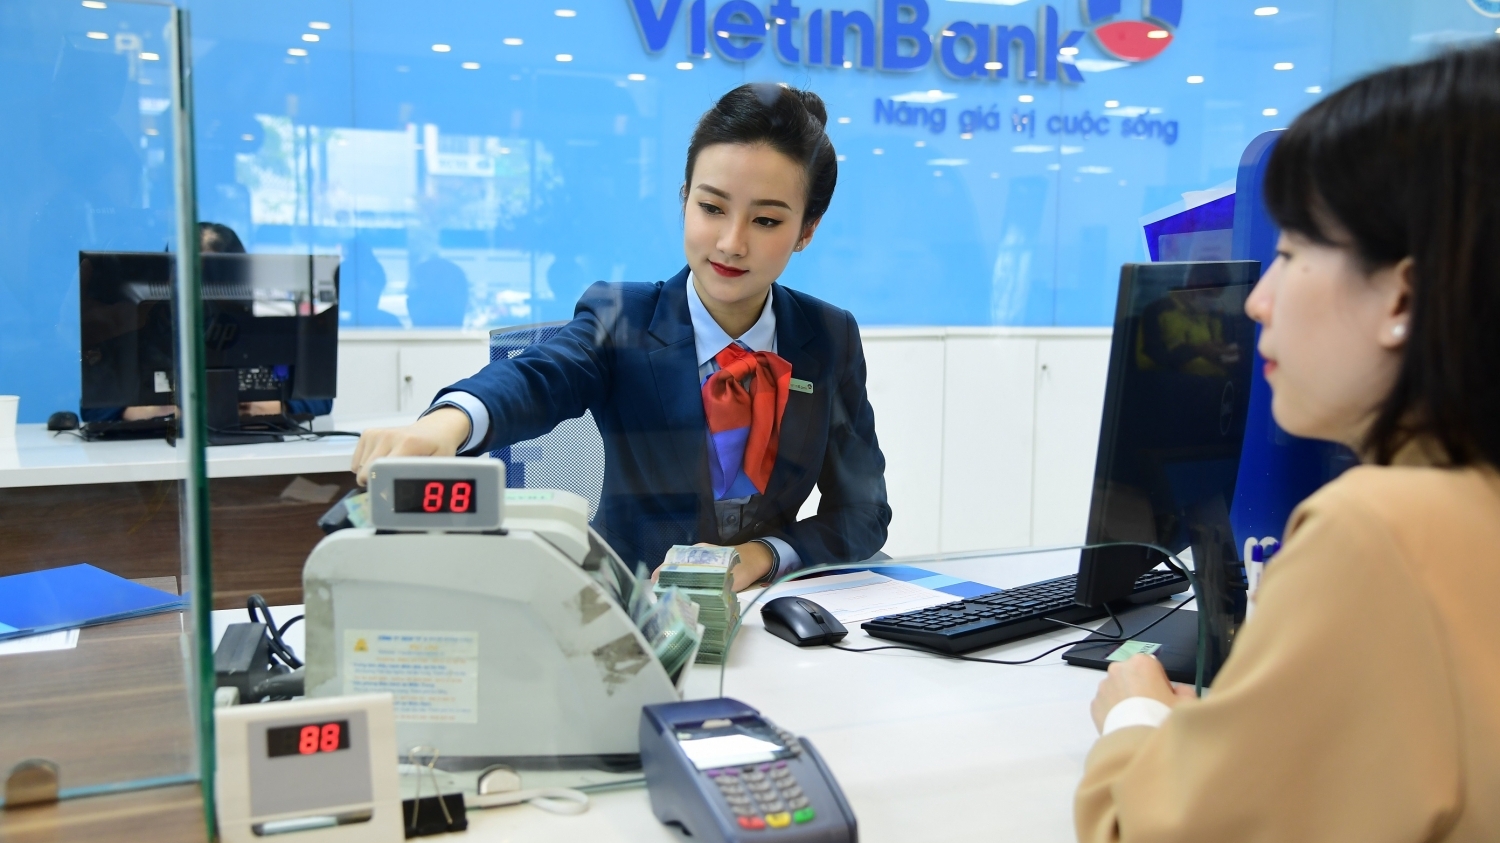 Tin ngân hàng ngày 19/11: VietinBank rao bán loạt khoản nợ cho vay tiêu dùng